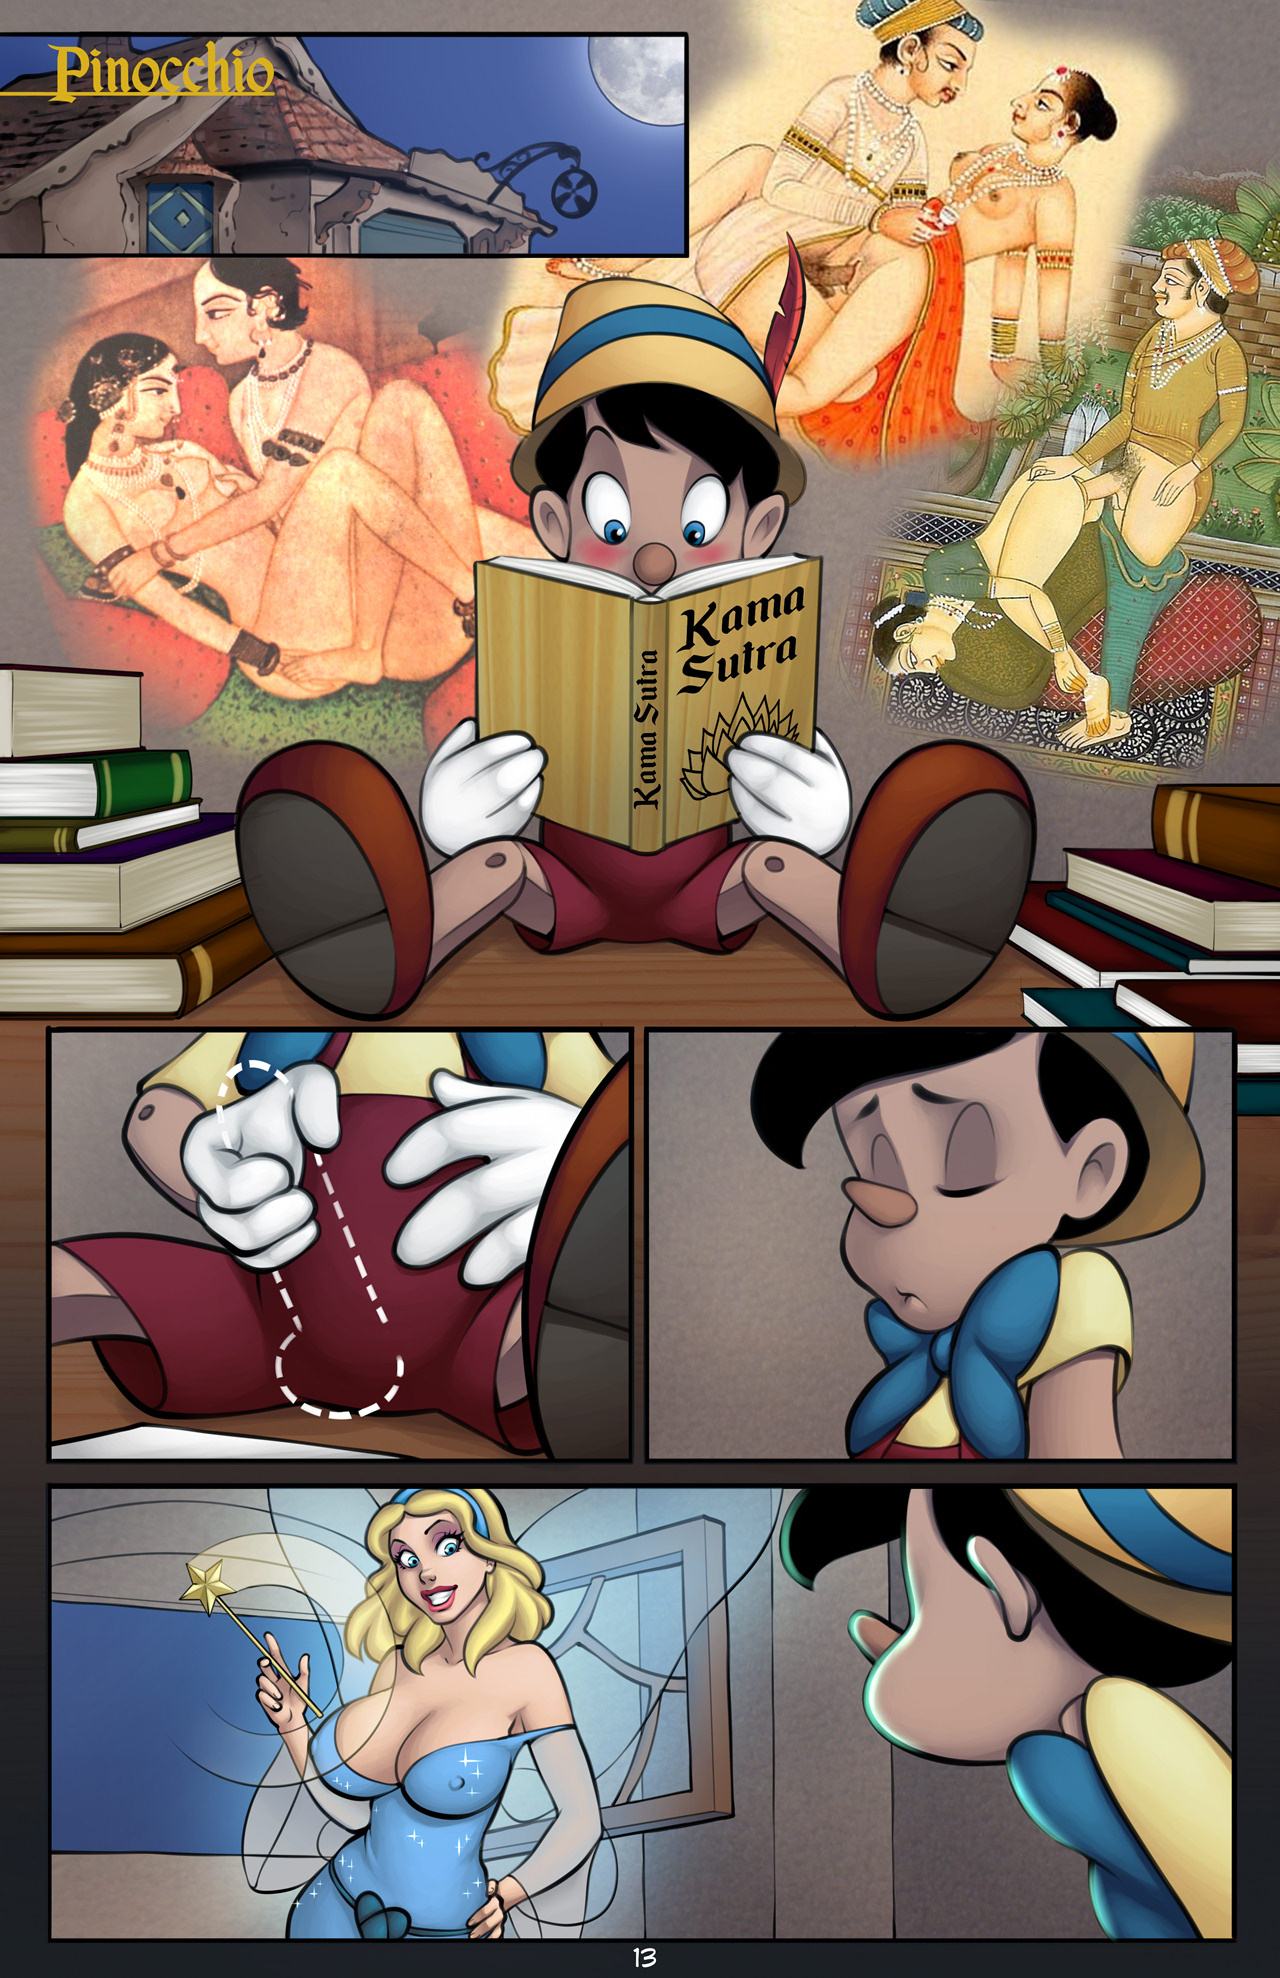 LOL: Hilarious Comics Illustrate The Sex Moves Of Disney Princesses -  DesignTAXI.com